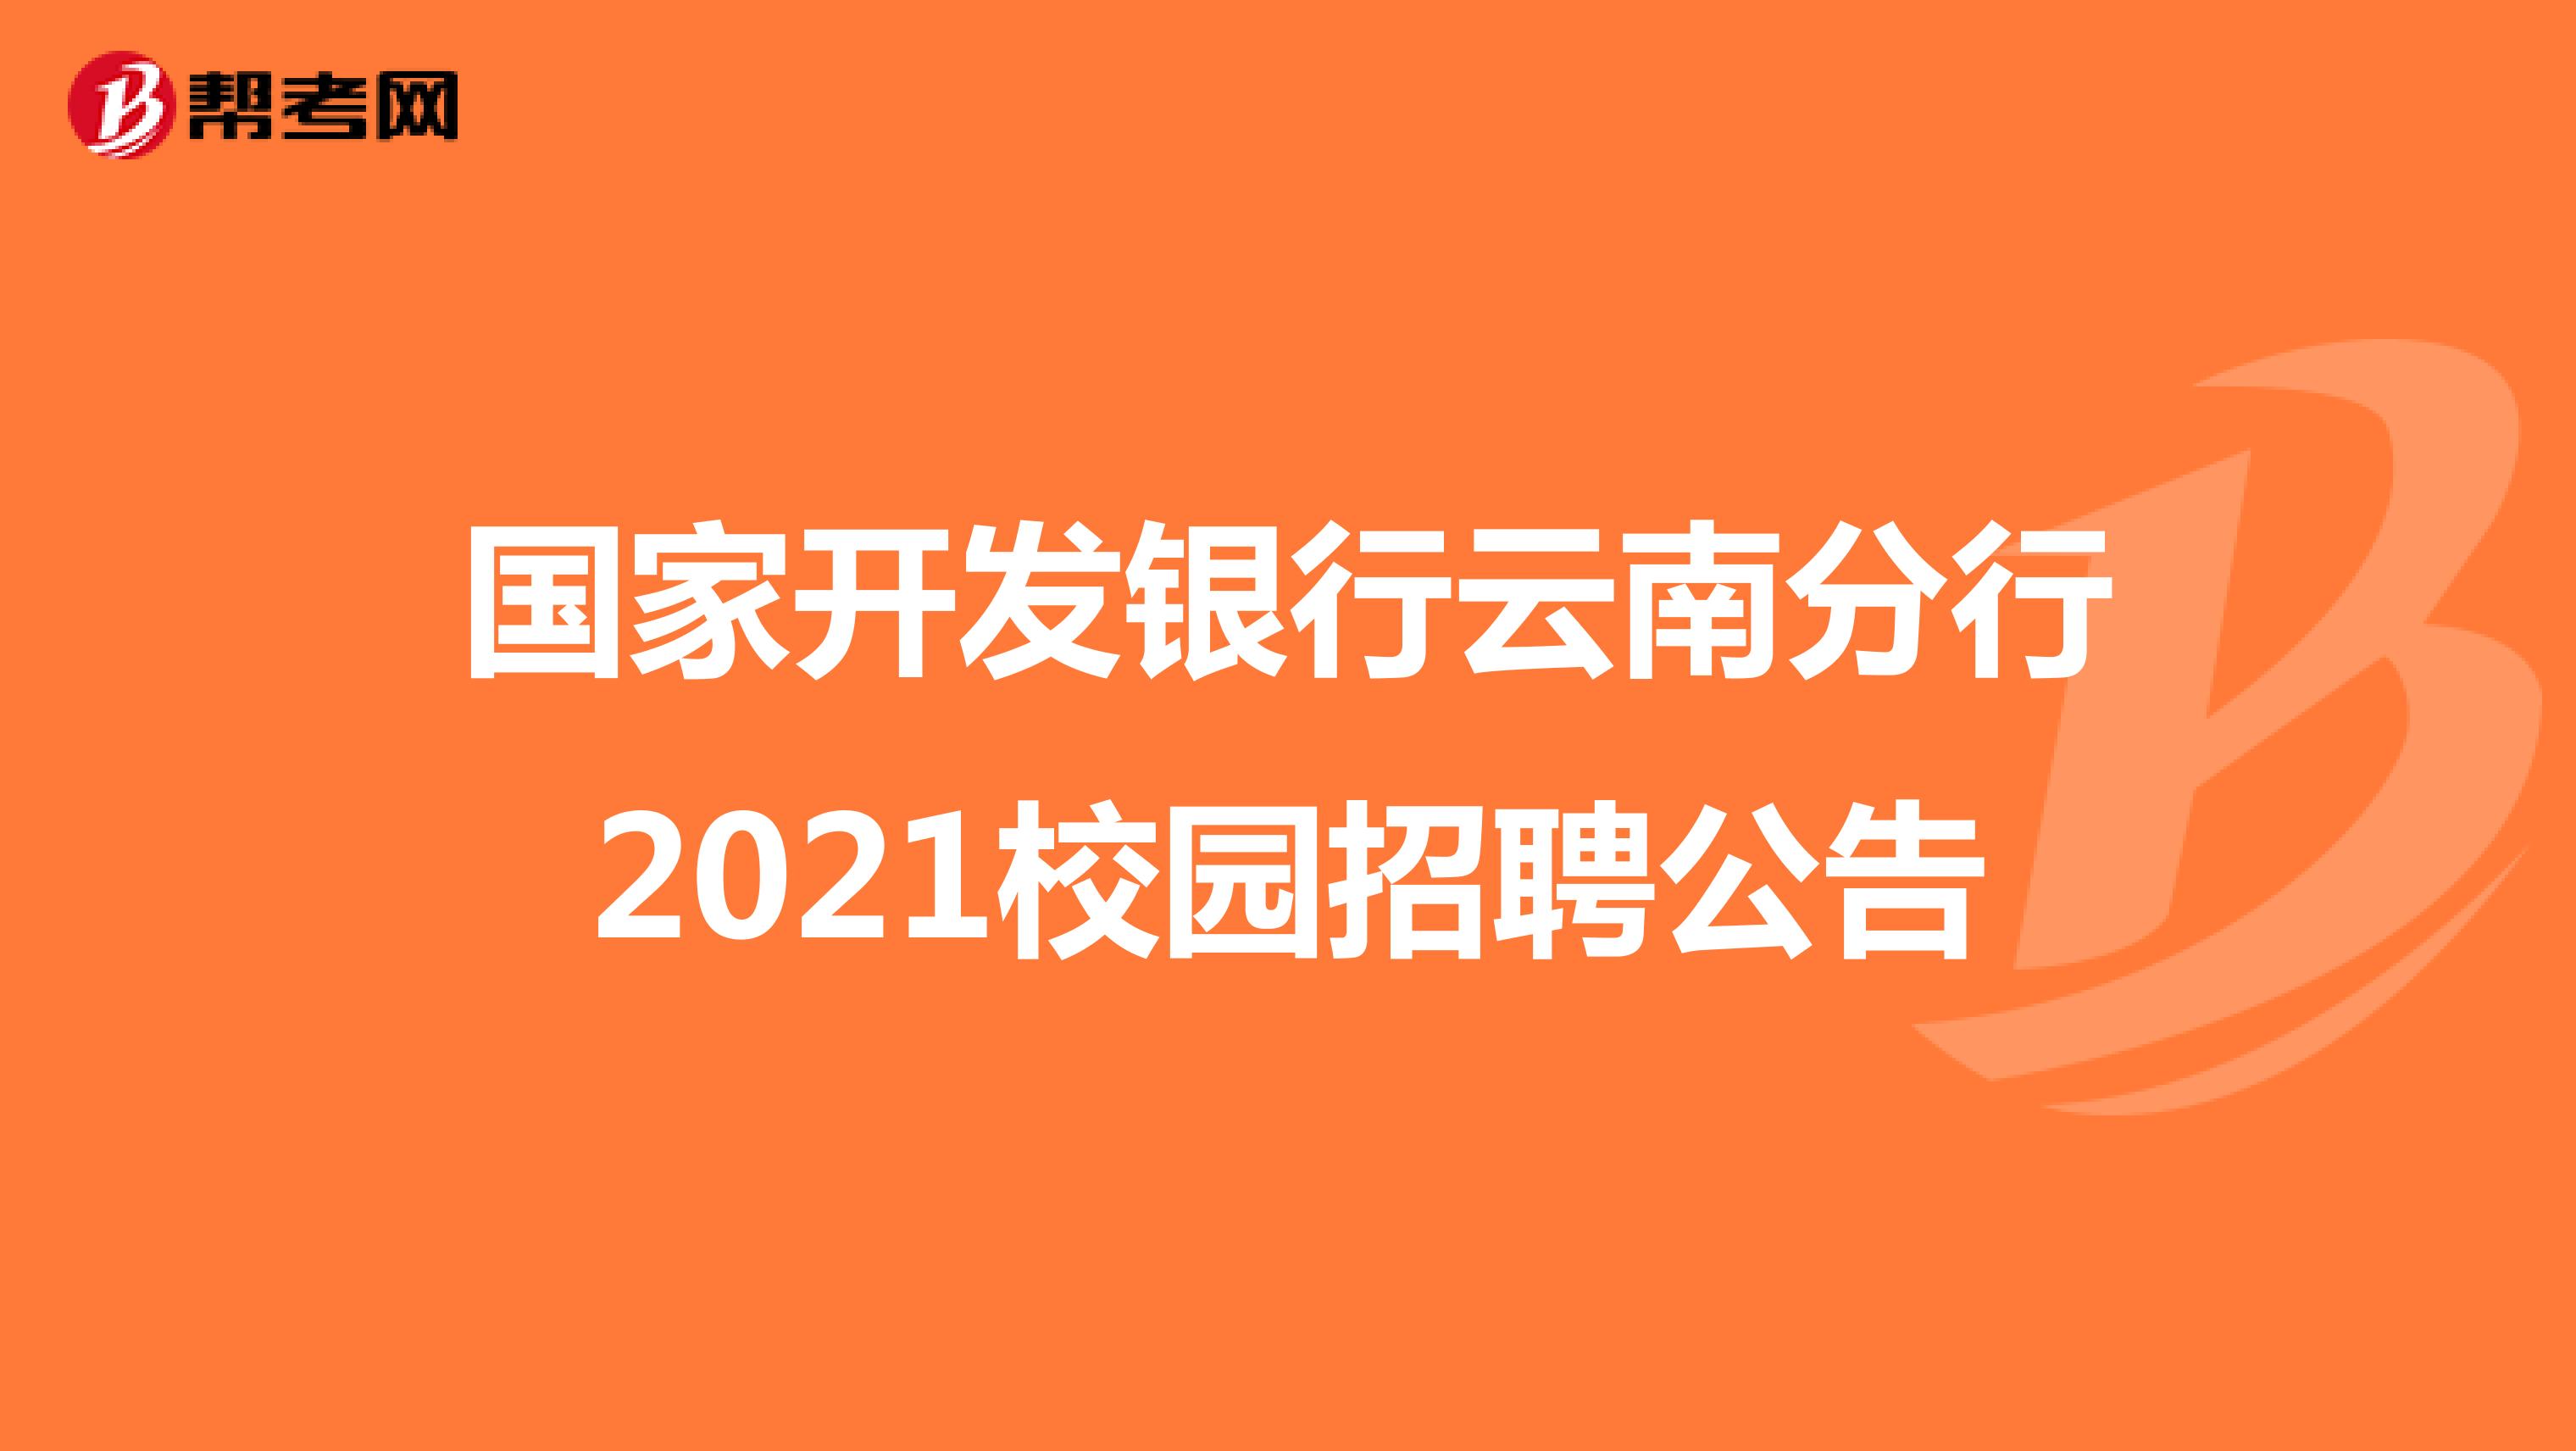 国家开发银行云南分行2021校园招聘公告